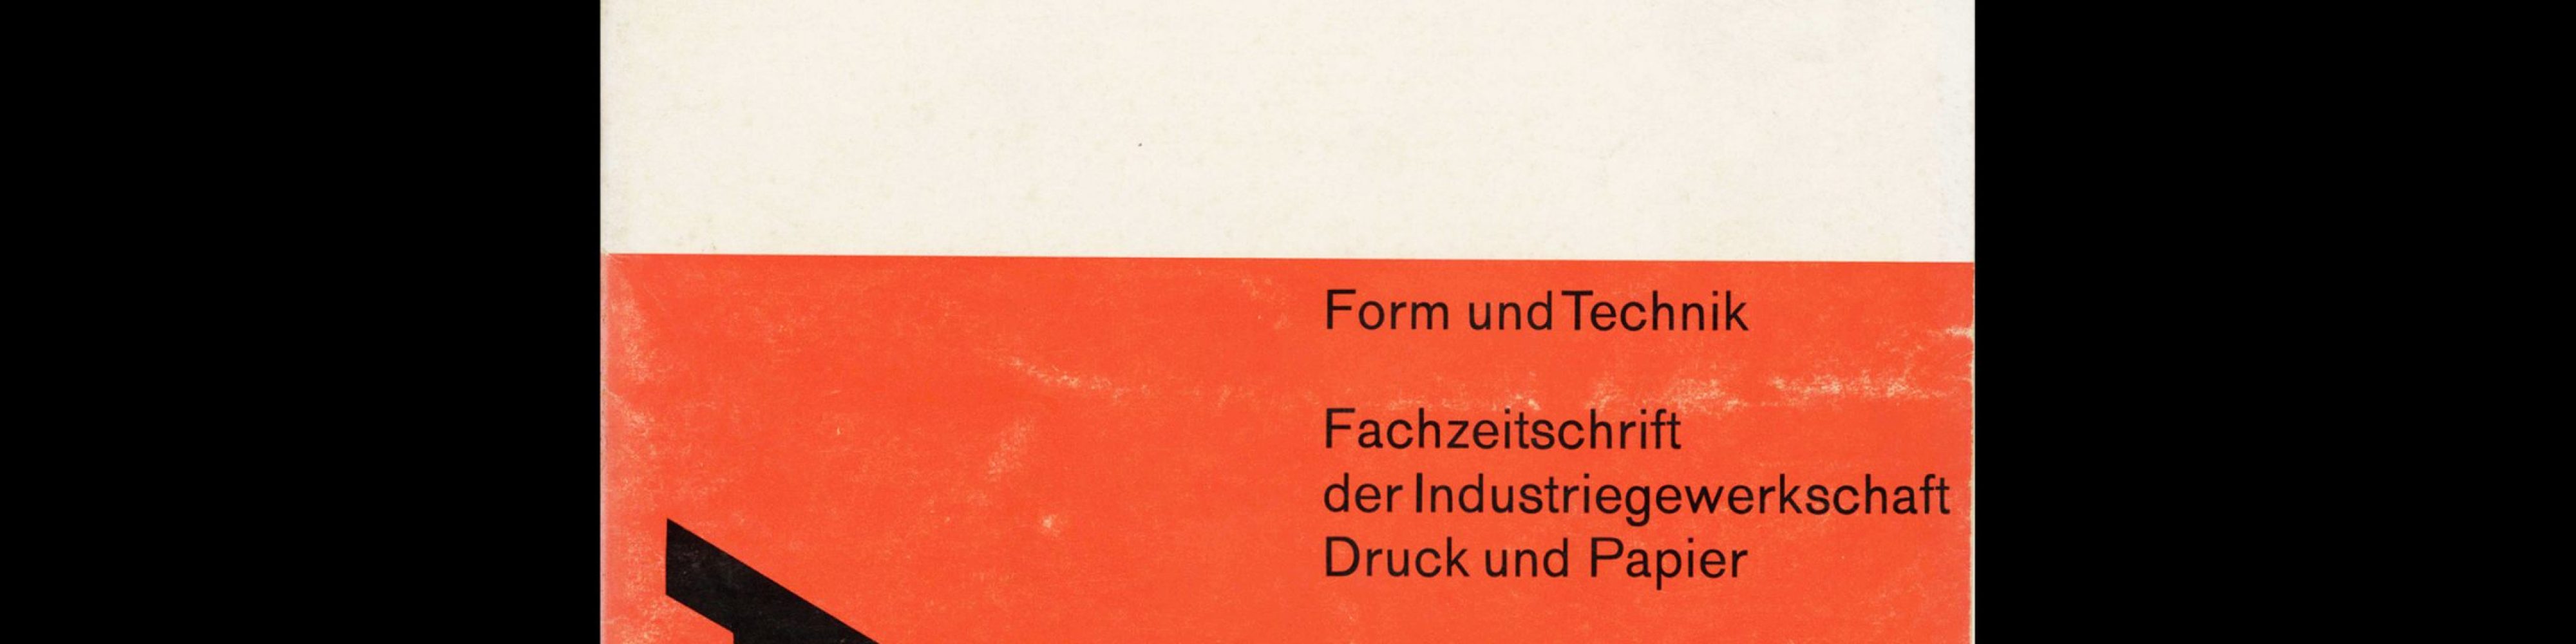 Form und Technik, 6, 1964